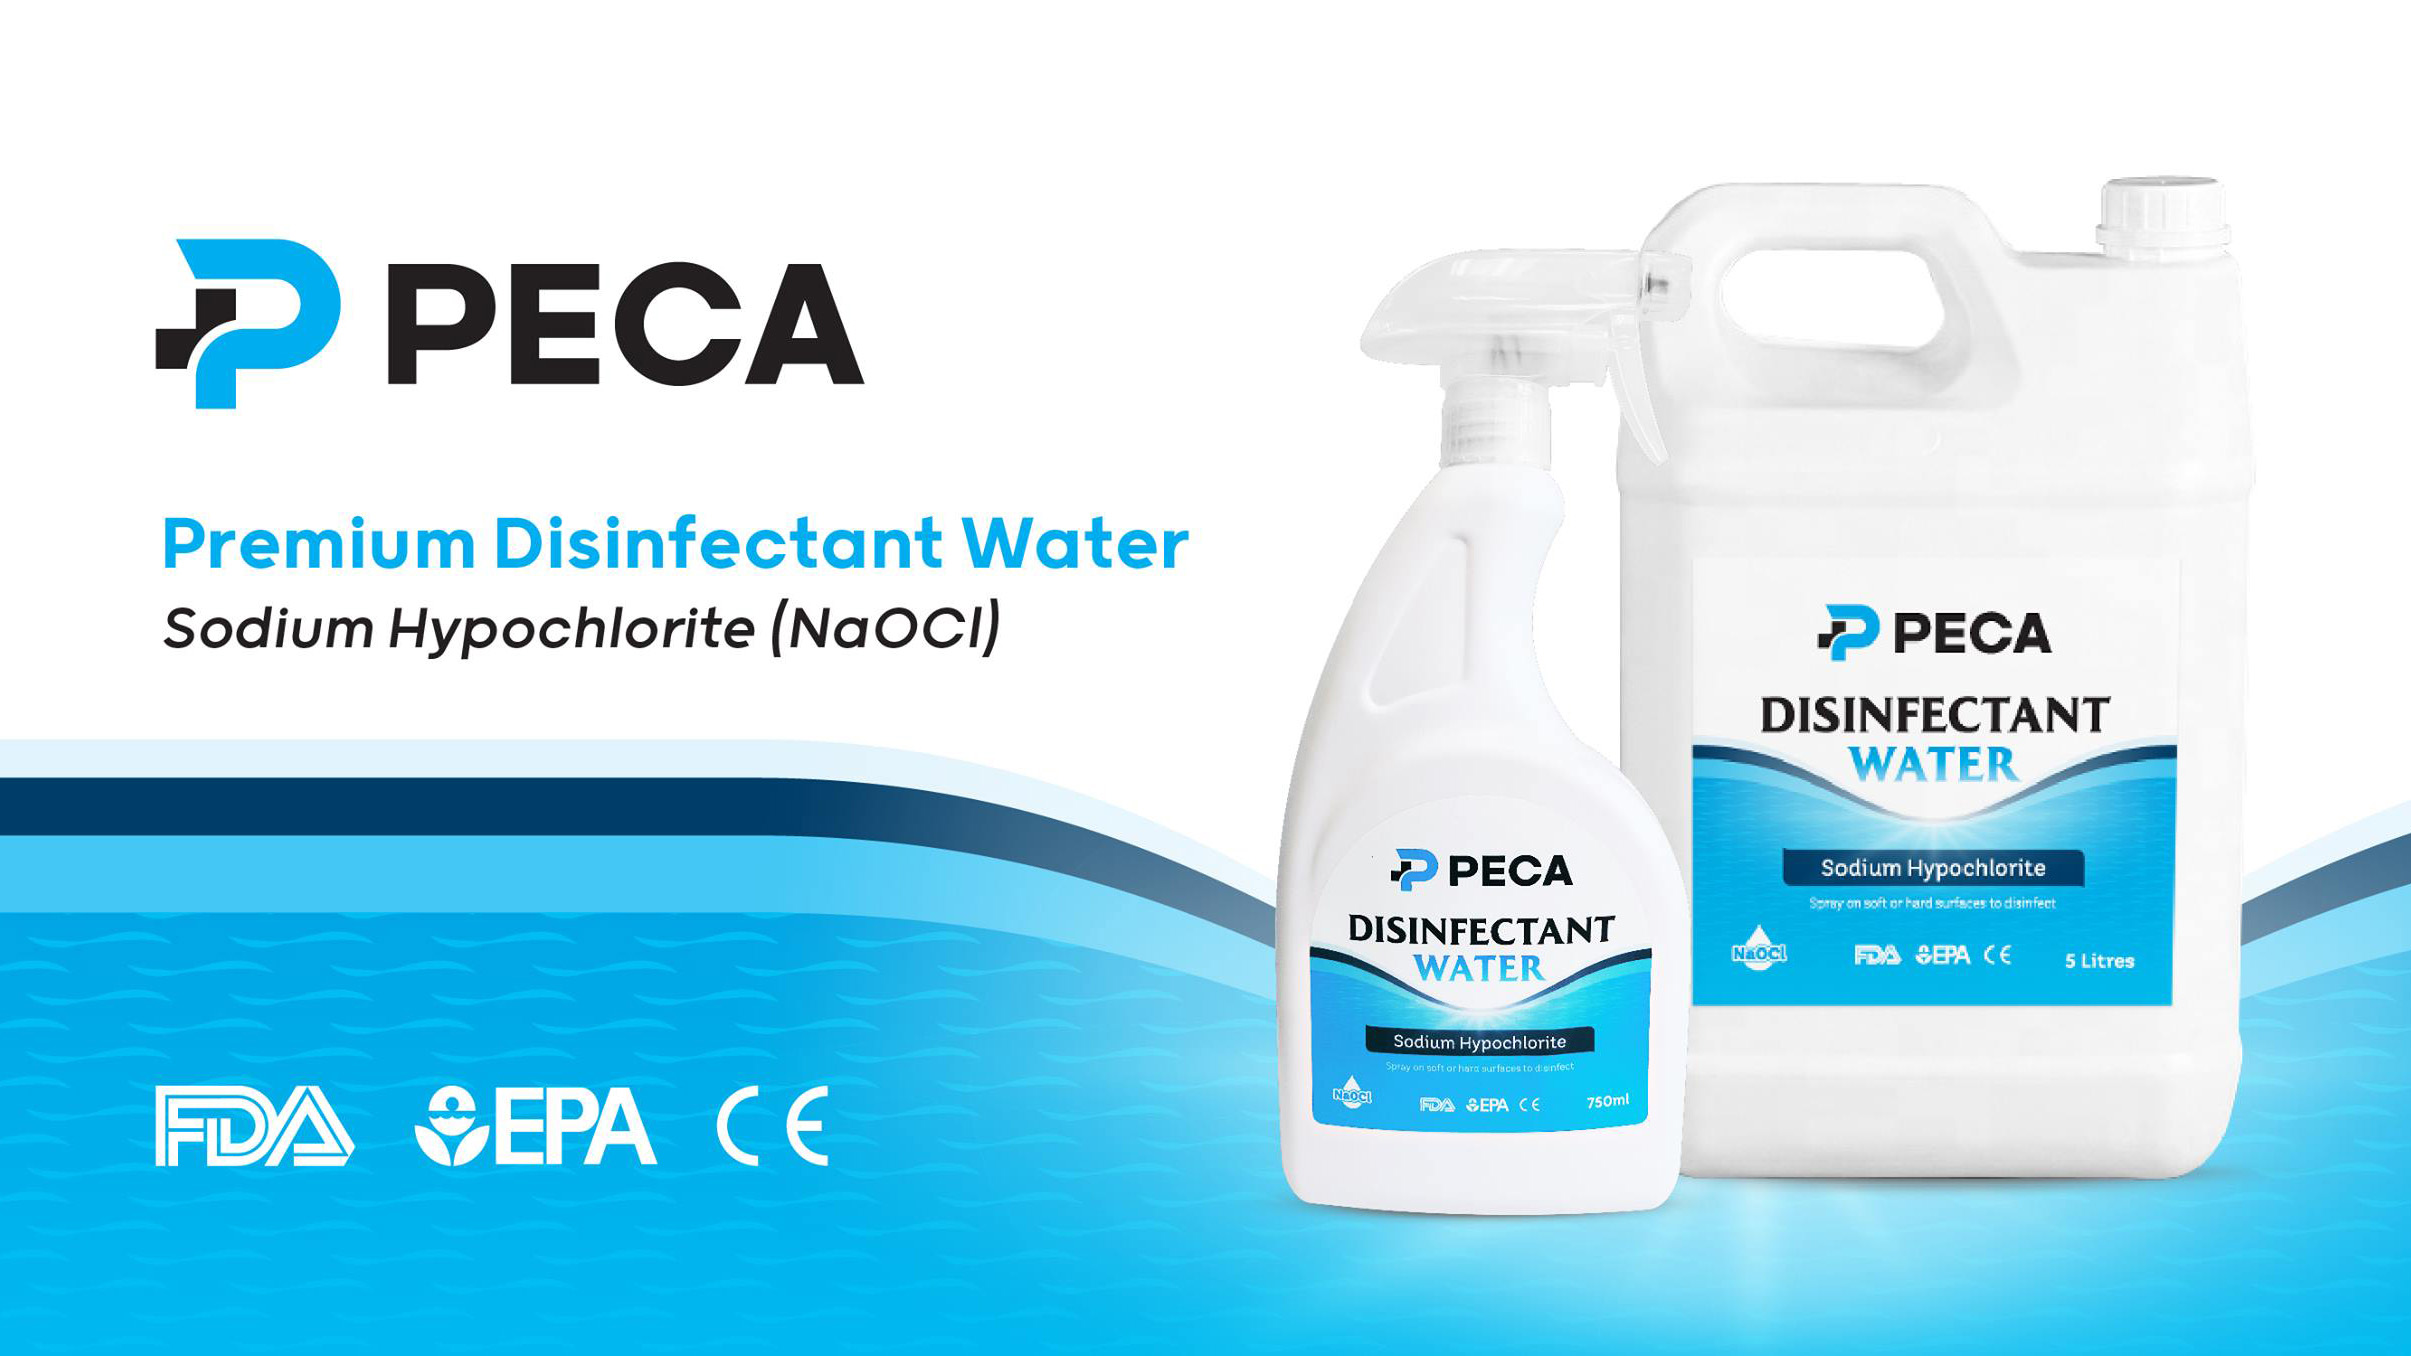 PECA Disinfectant Water